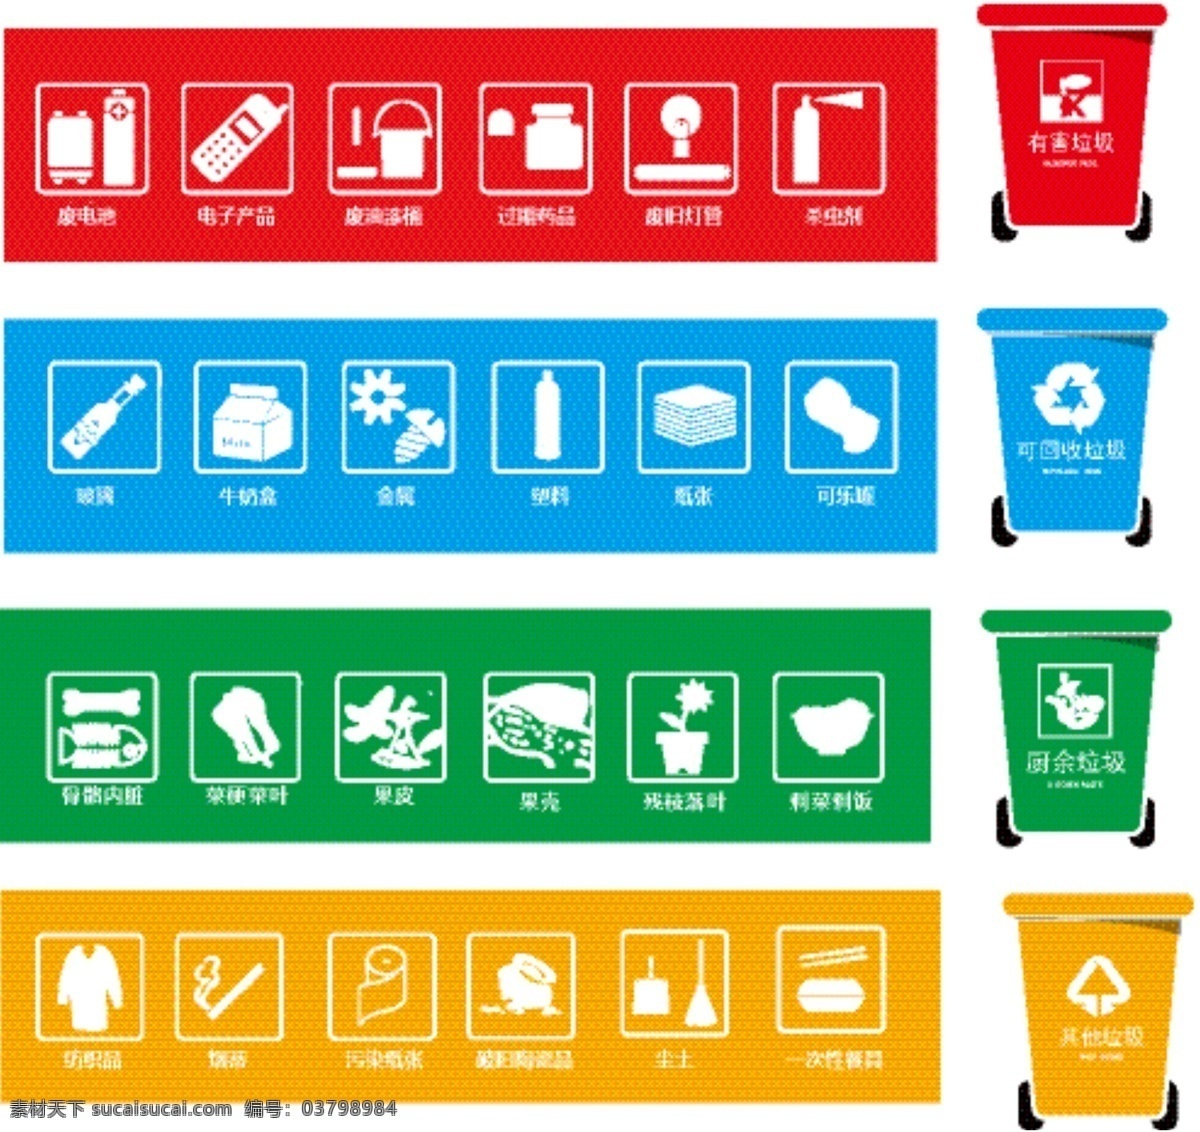 垃圾分类标示 垃圾桶 标示 废电池 玻璃 骨骼 落叶 烟蒂 餐具 尘土 标志图标 公共标识标志